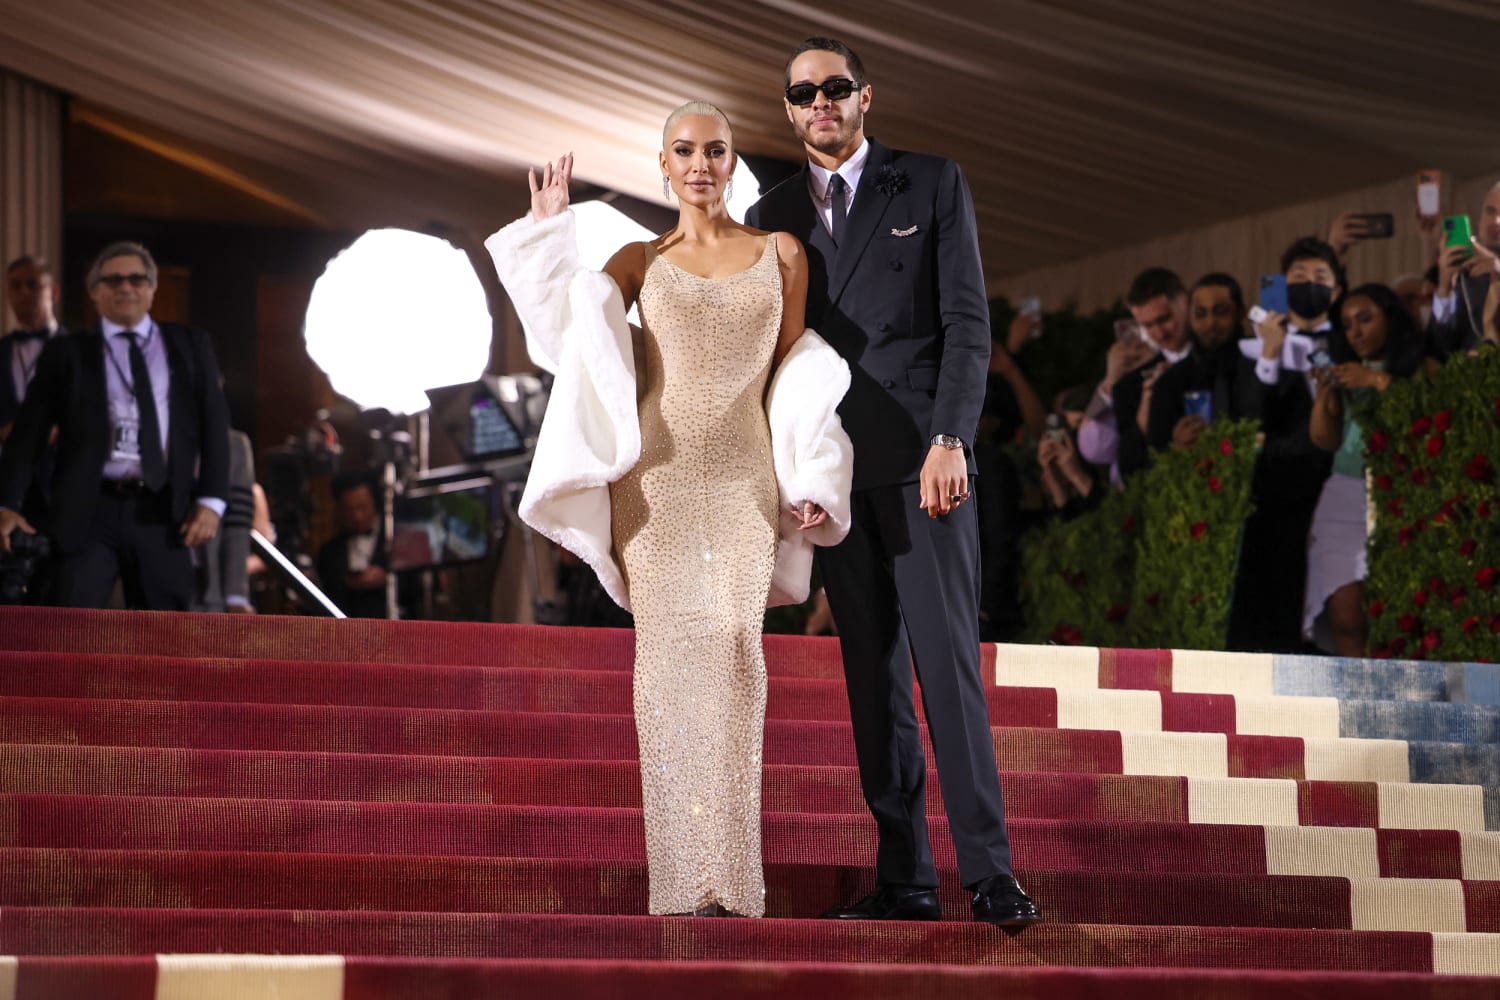 Kardashian fans think Kim wearing Marilyn Monroe's dress at Met